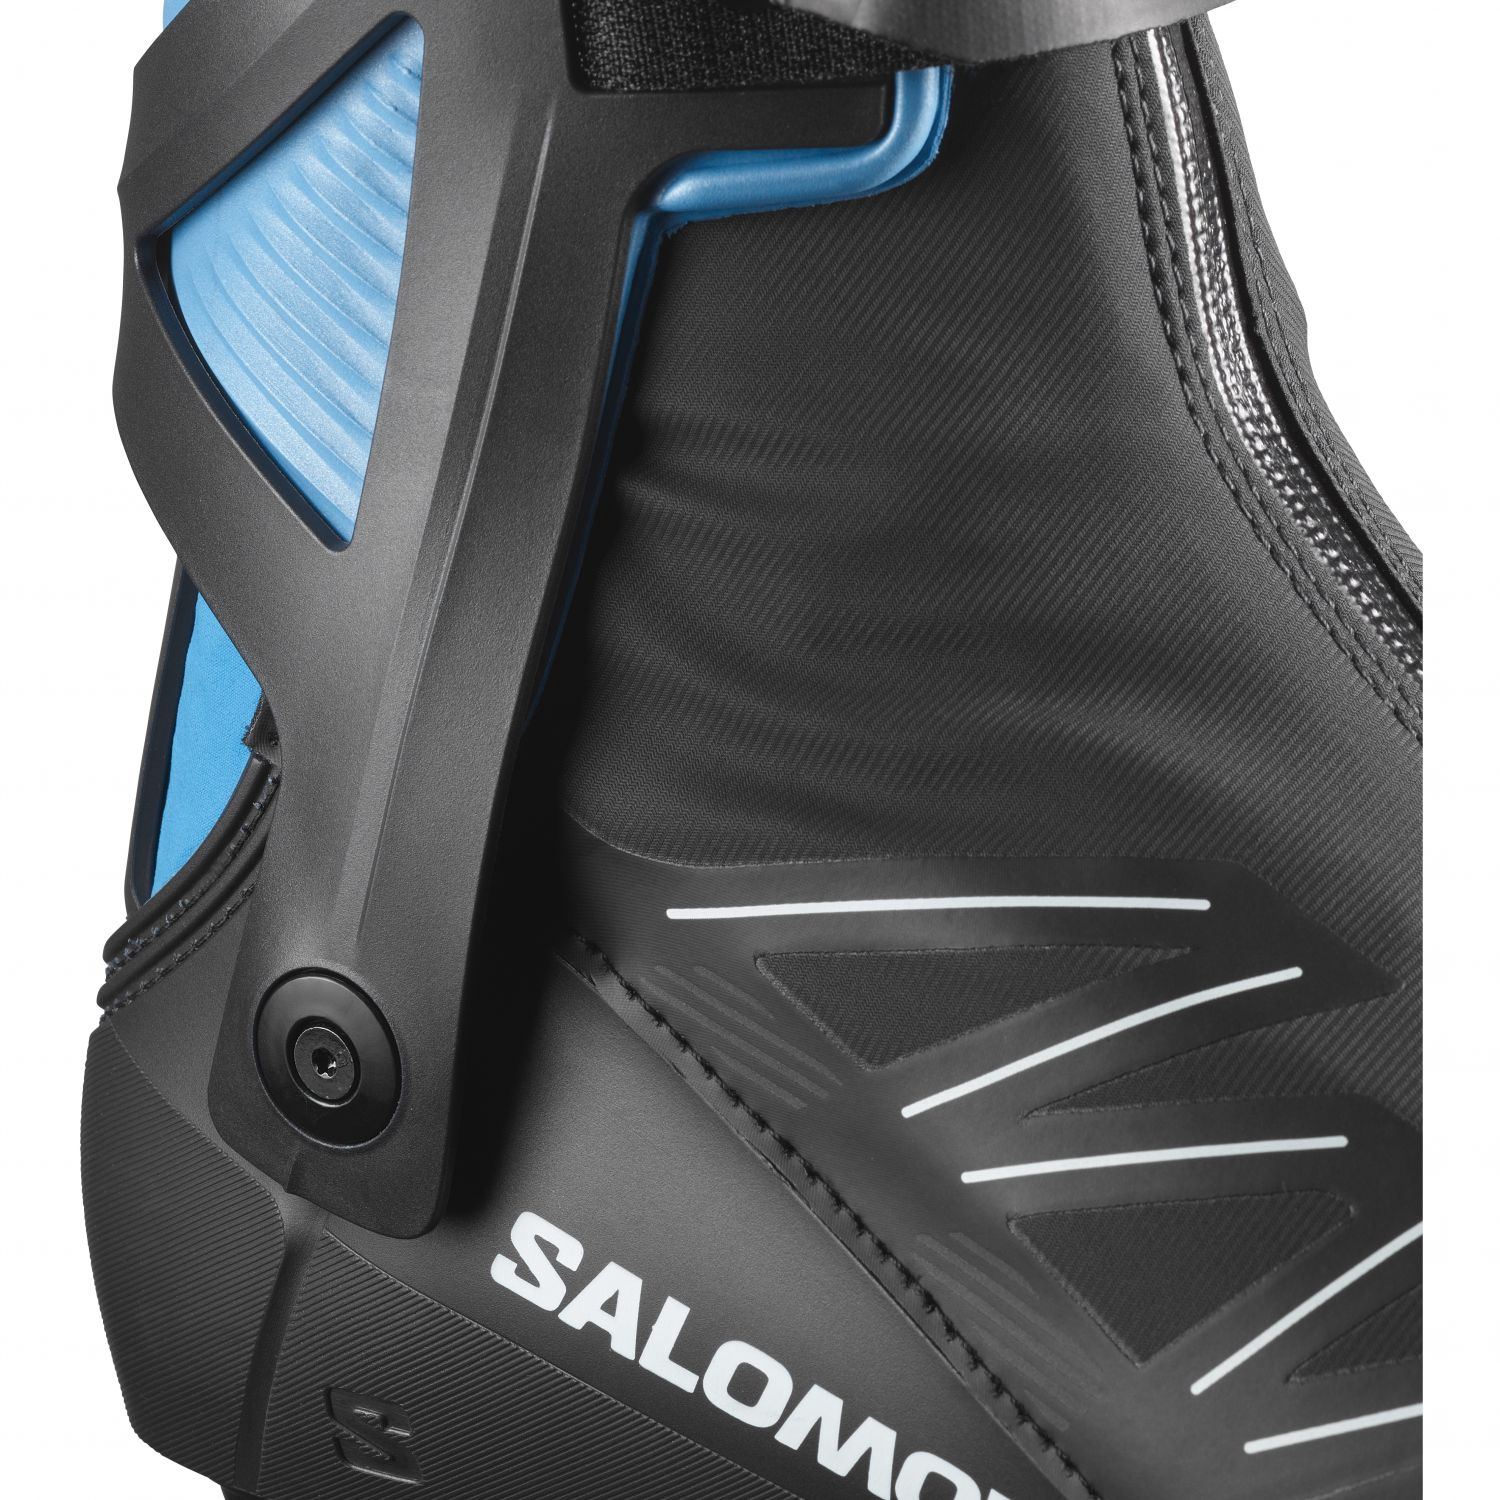 Leonardoda Luske aflevere Salomon RS8 Prolink, langrendsstøvler, herre, mørkeblå